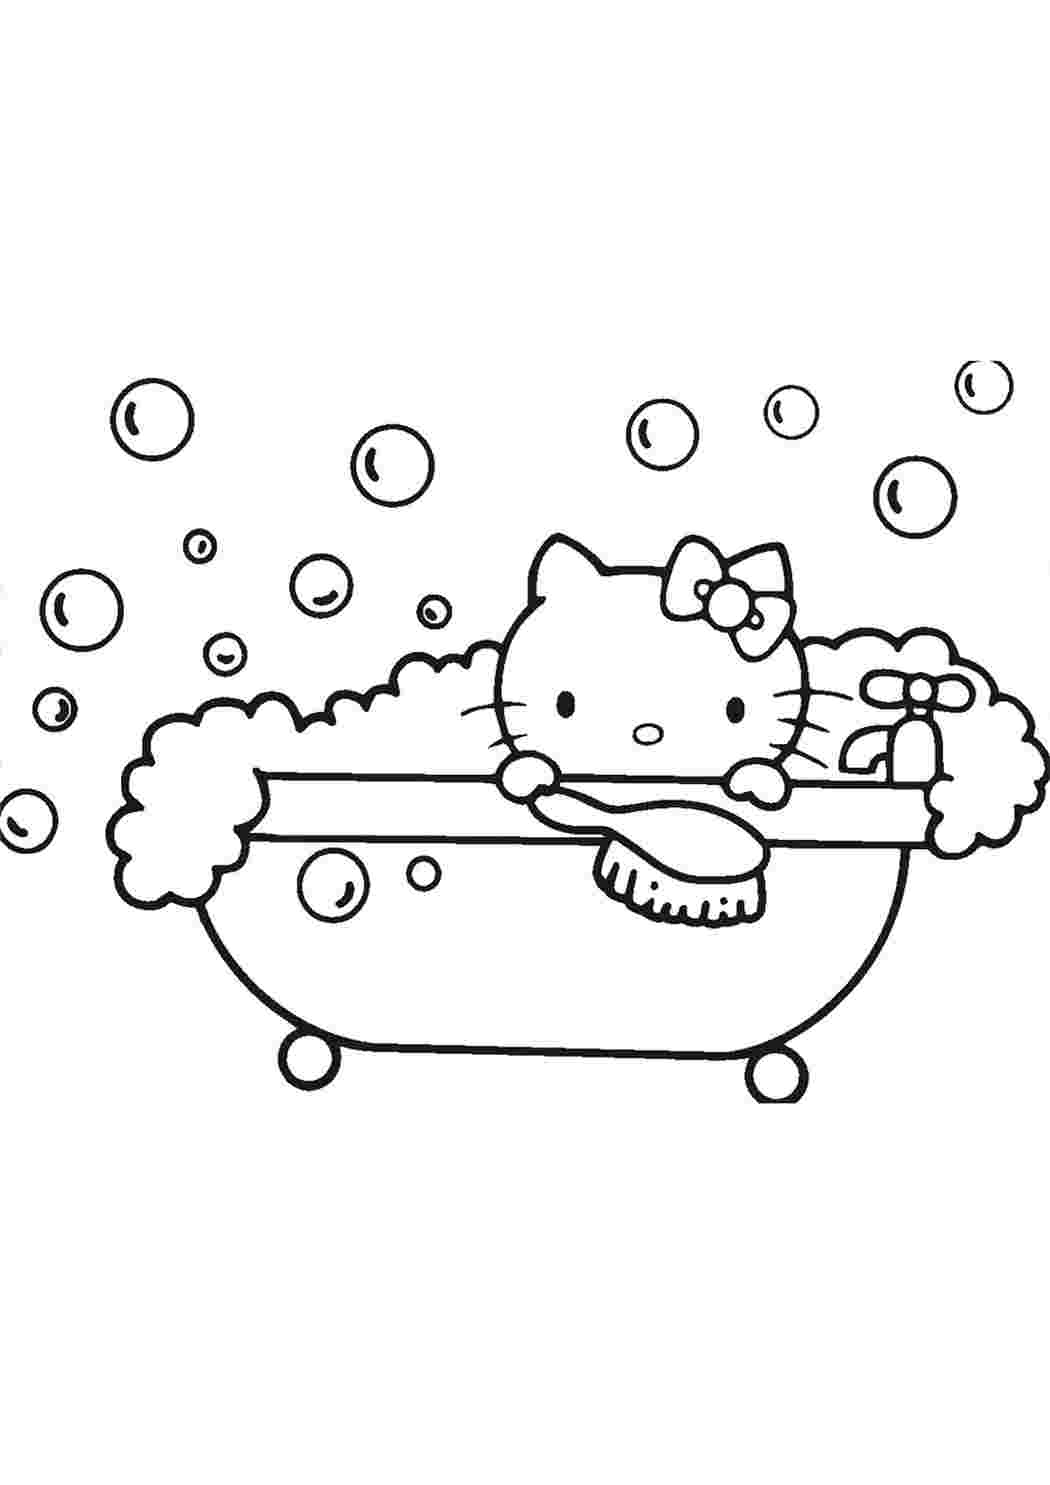 Розмальовка для дітей від 3років Hello Kitty Egmont 1шт